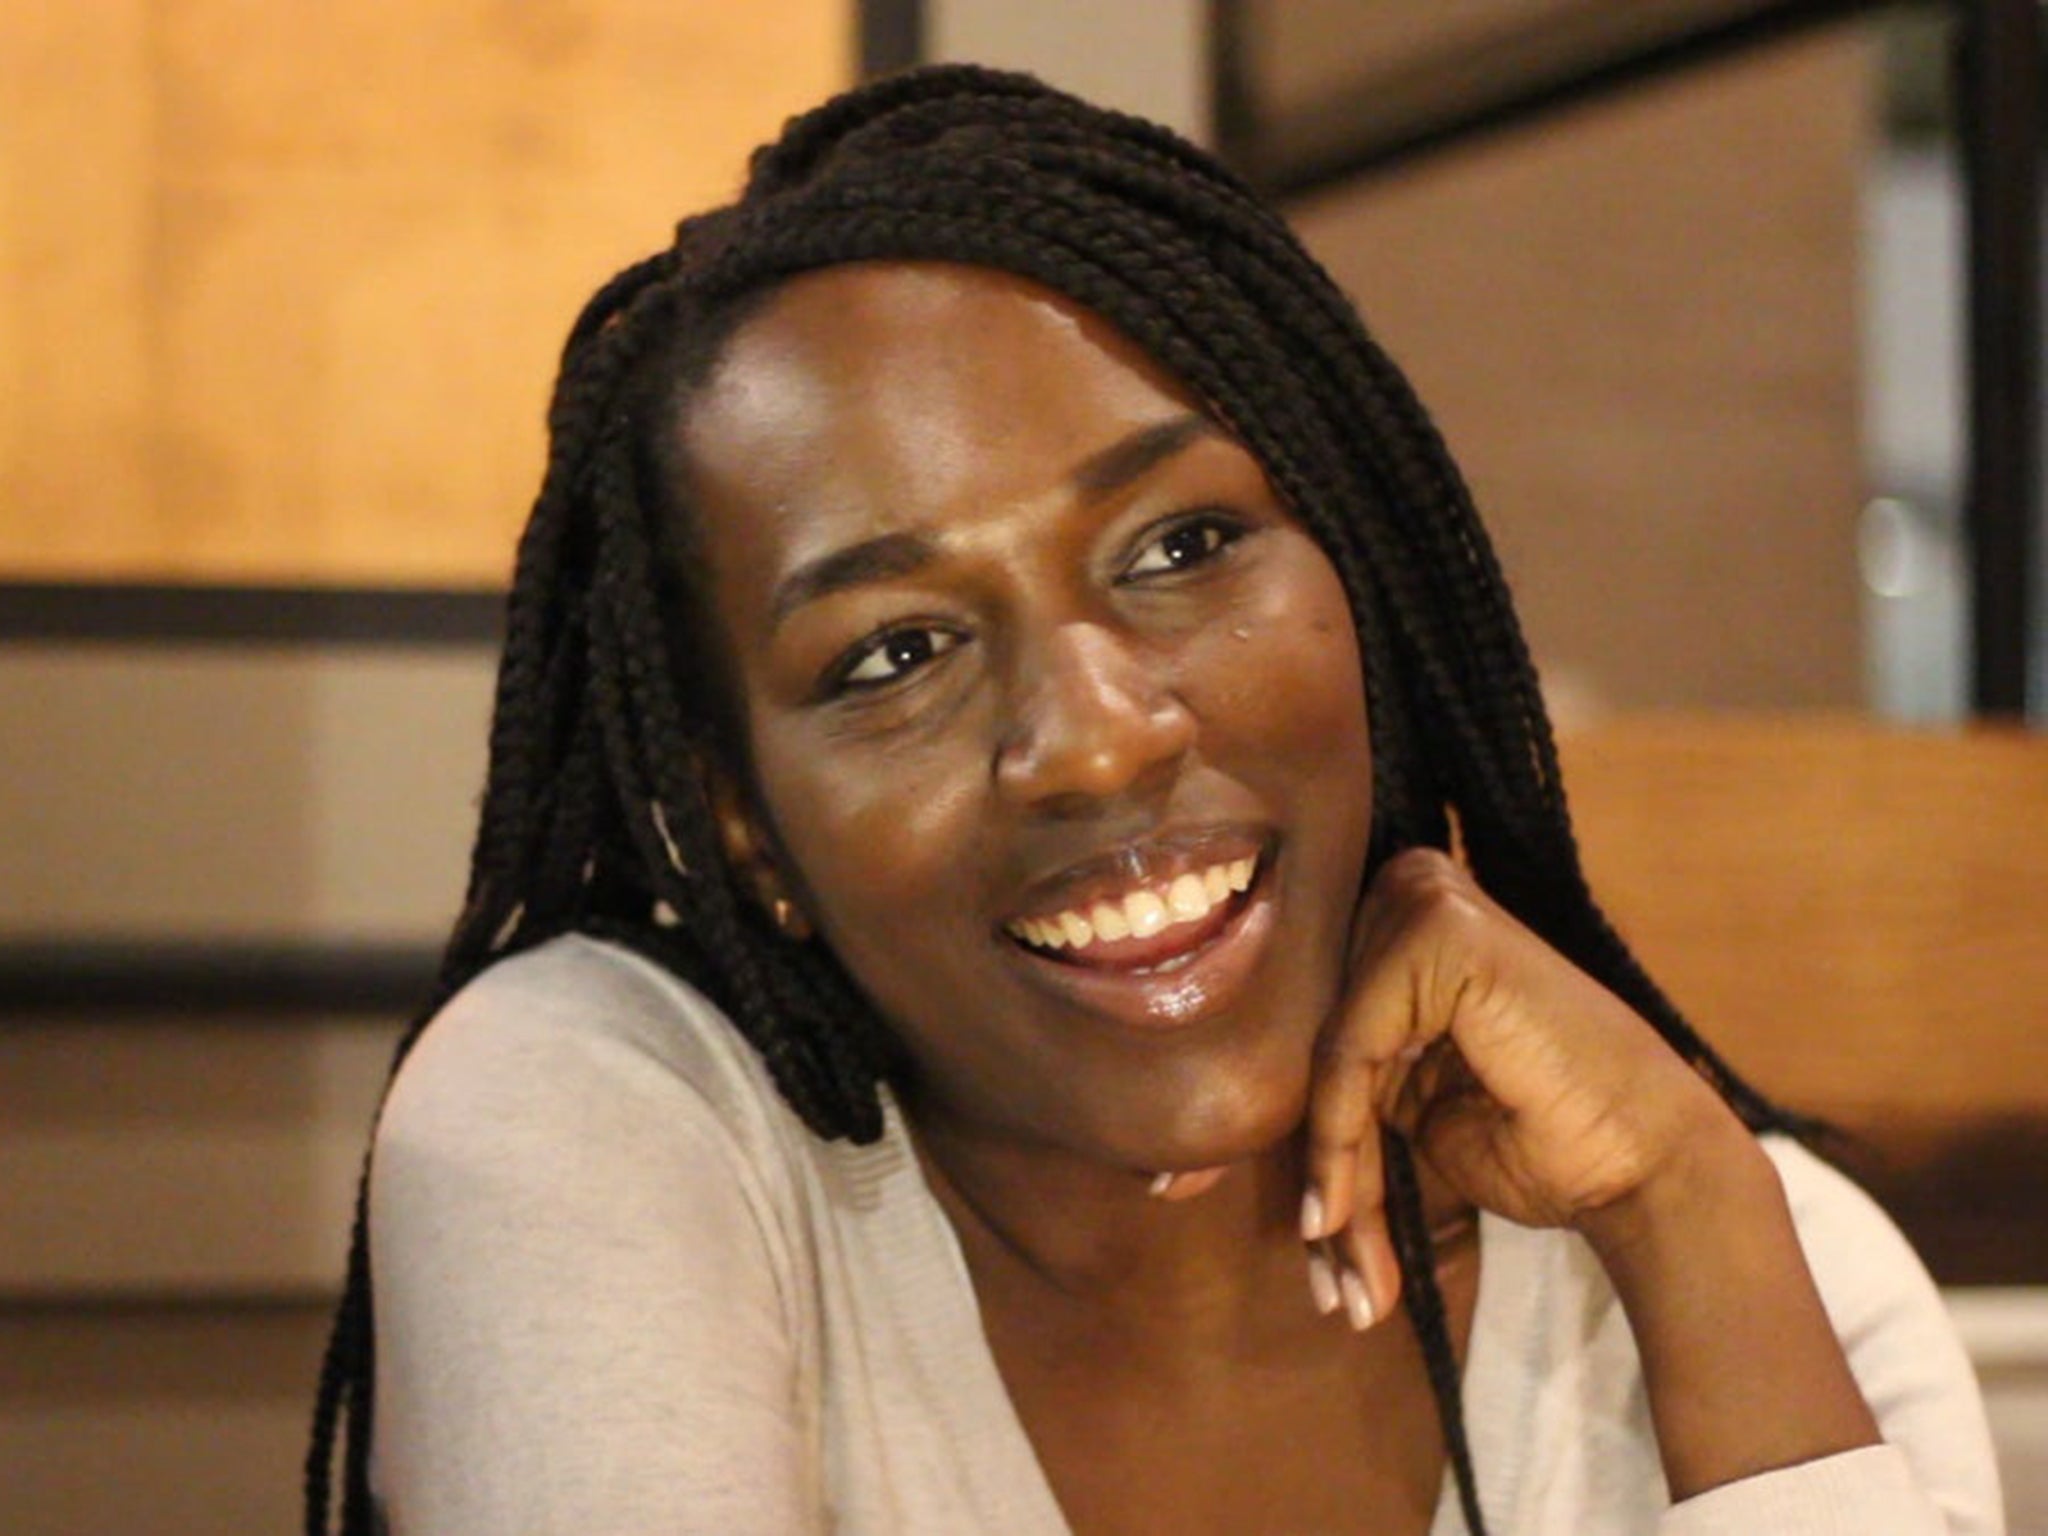 Hannah Ajala established support platform We Are Black Journos